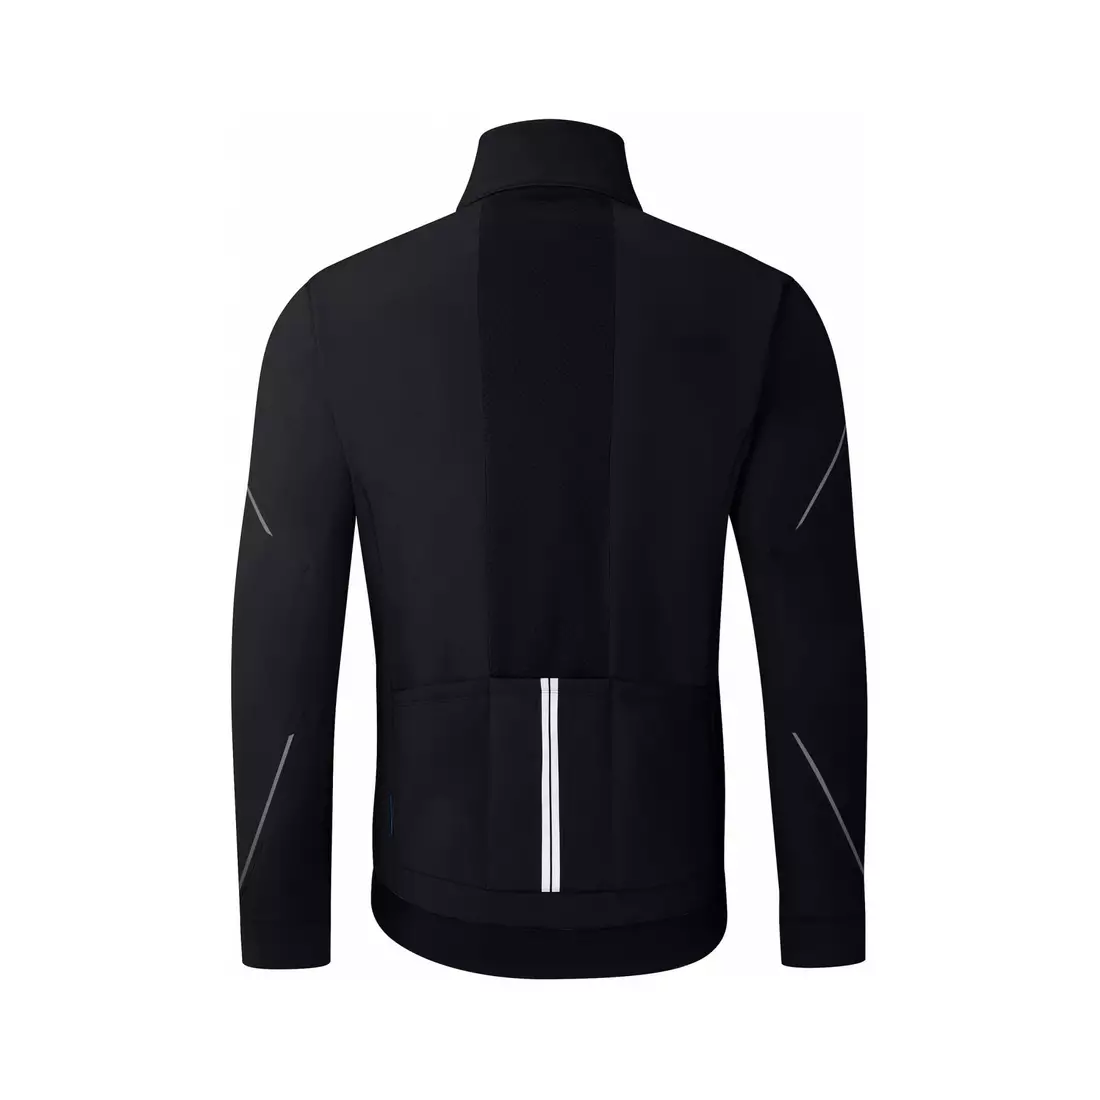 SHIMANO WINDBREAK winter cycling jacket, black ECWJAPWQS22